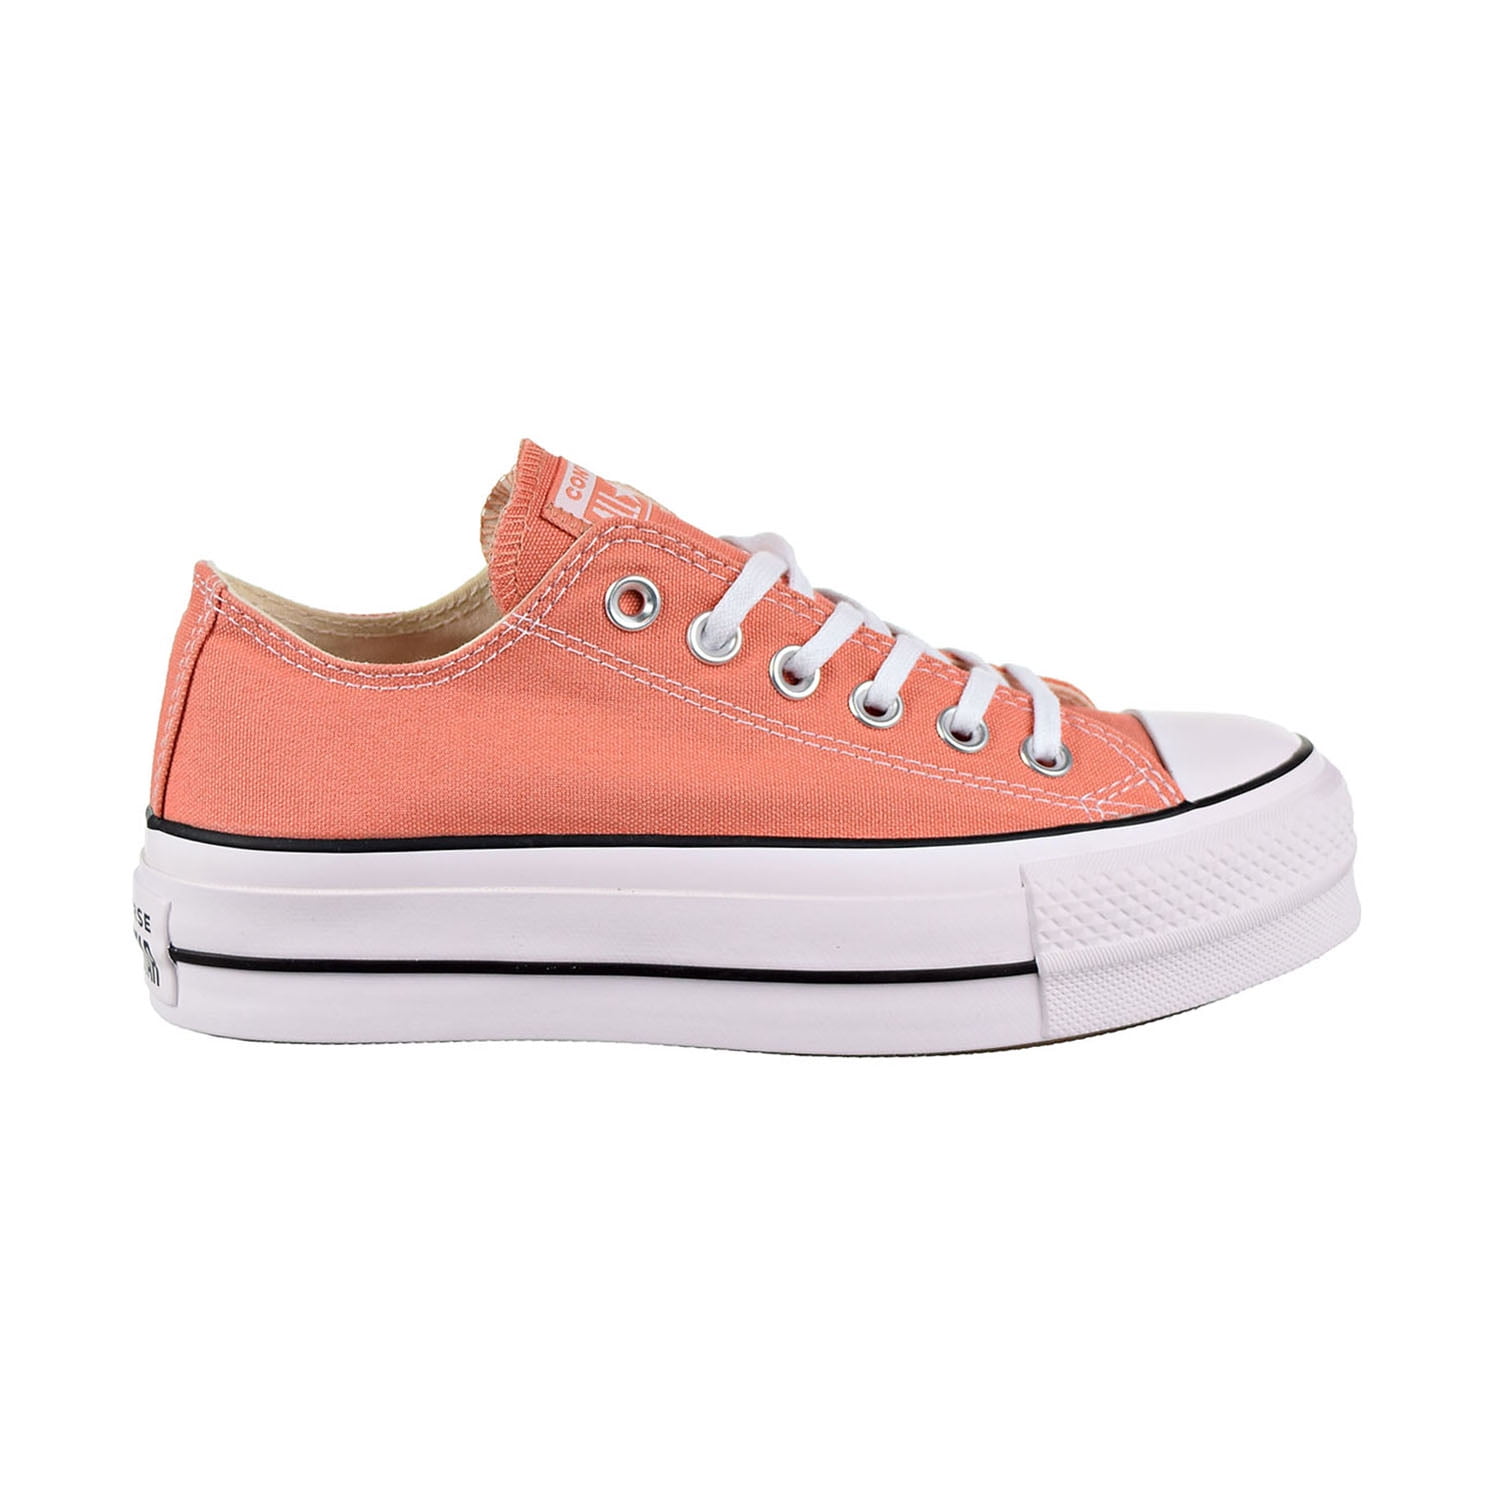 peach colored converse